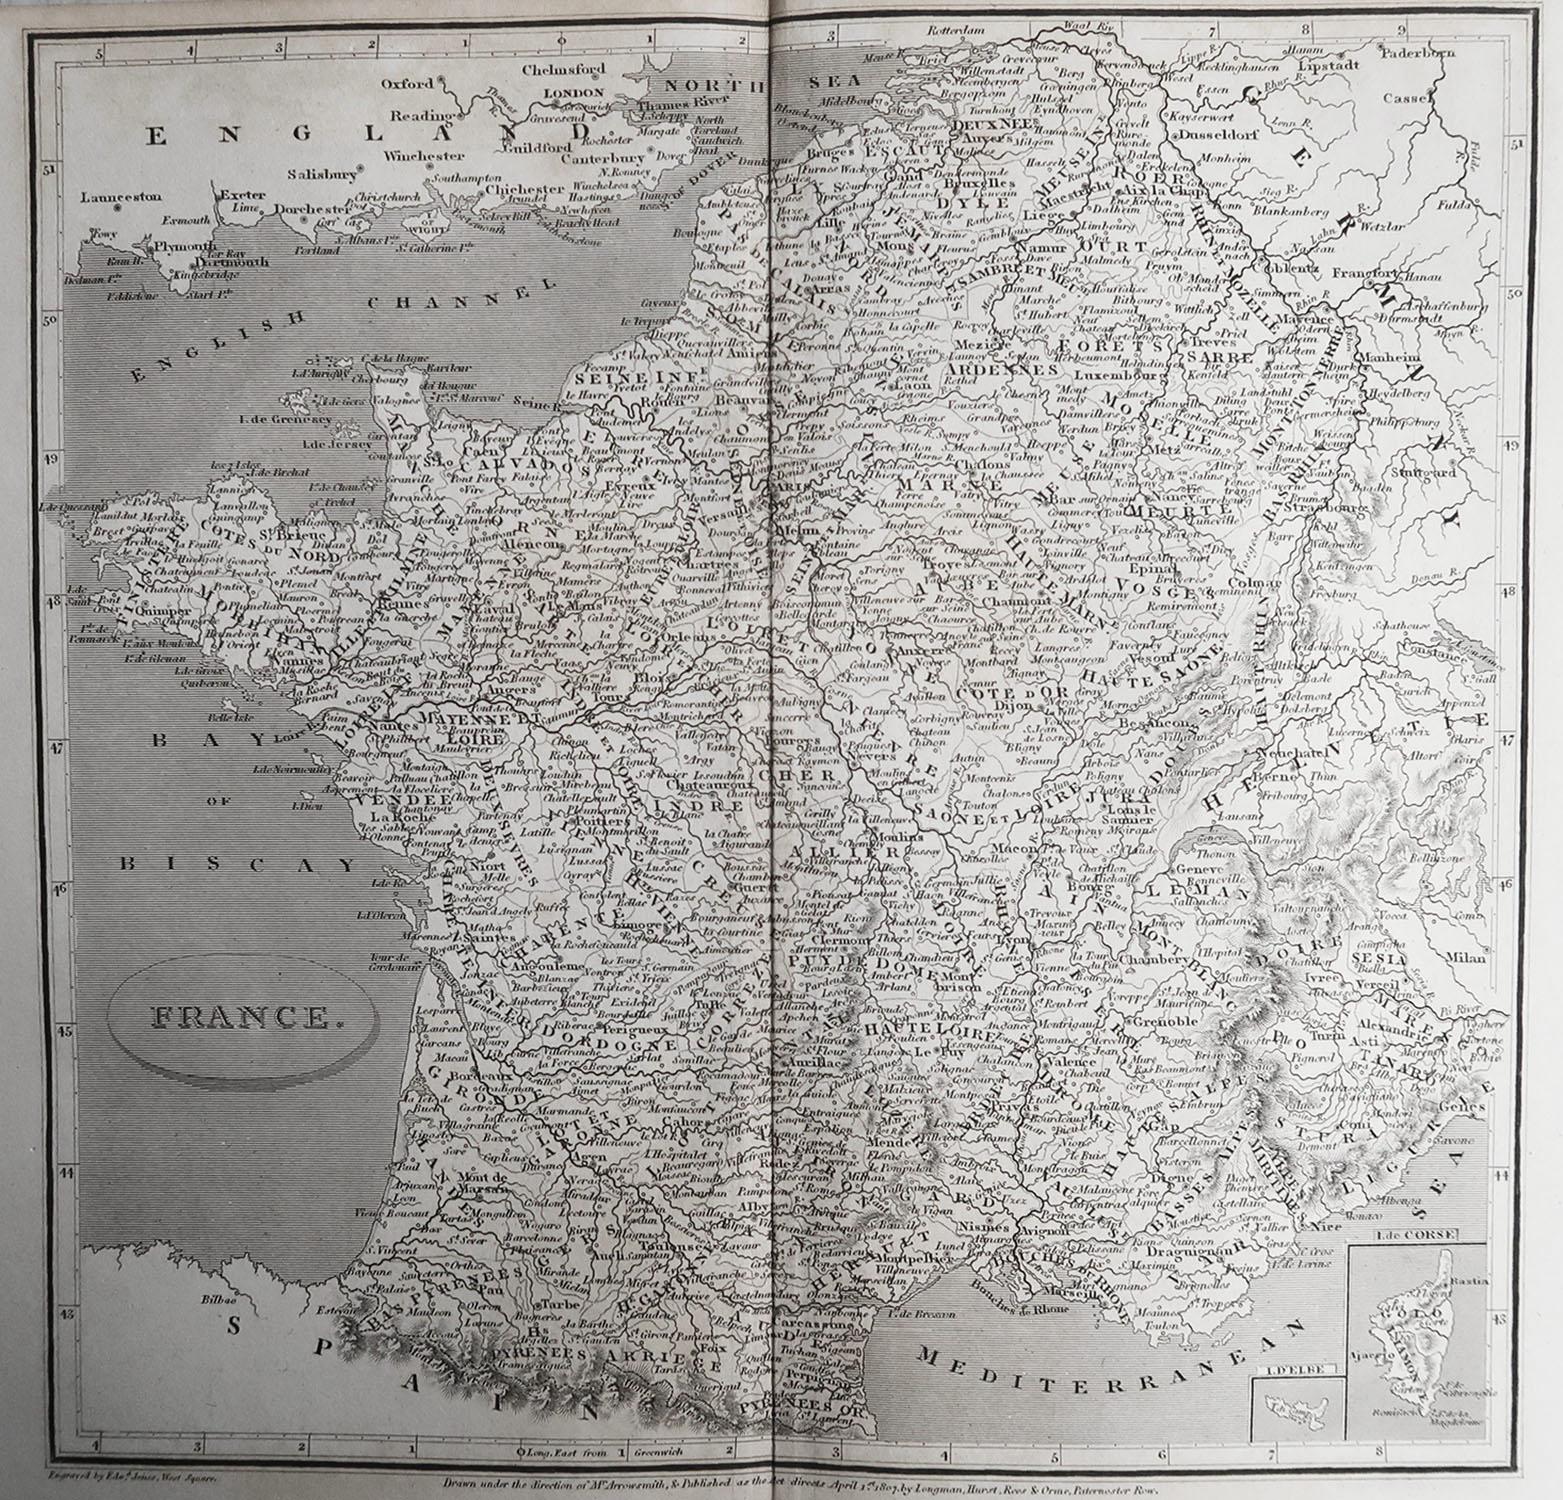 Große Karte von Frankreich

Gezeichnet unter der Leitung von Arrowsmith.

Kupferstich.

Veröffentlicht von Longman, Hurst, Rees, Orme und Brown, 1820

Ungerahmt.